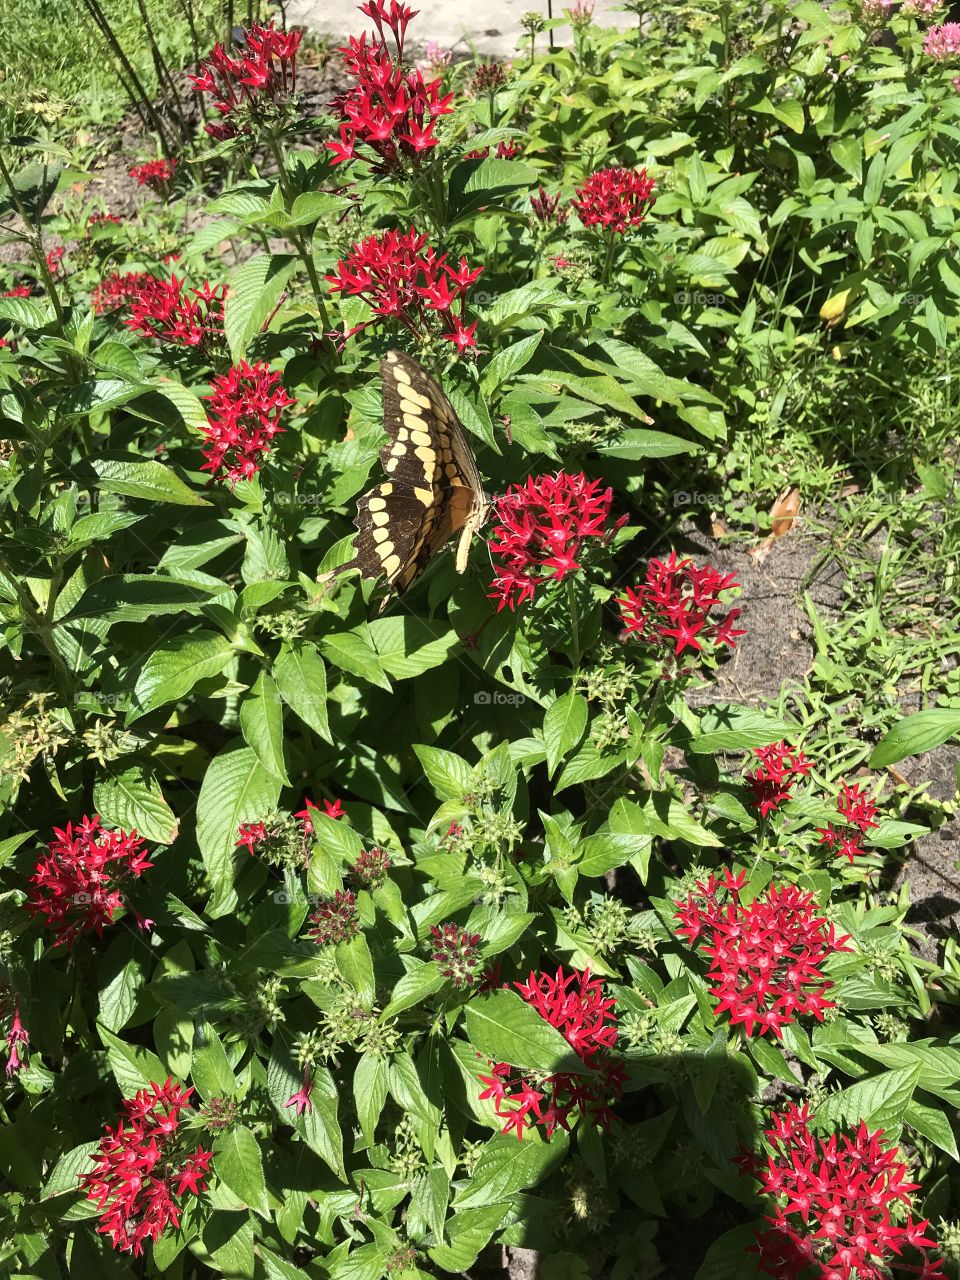 Butterfly in a garden. 